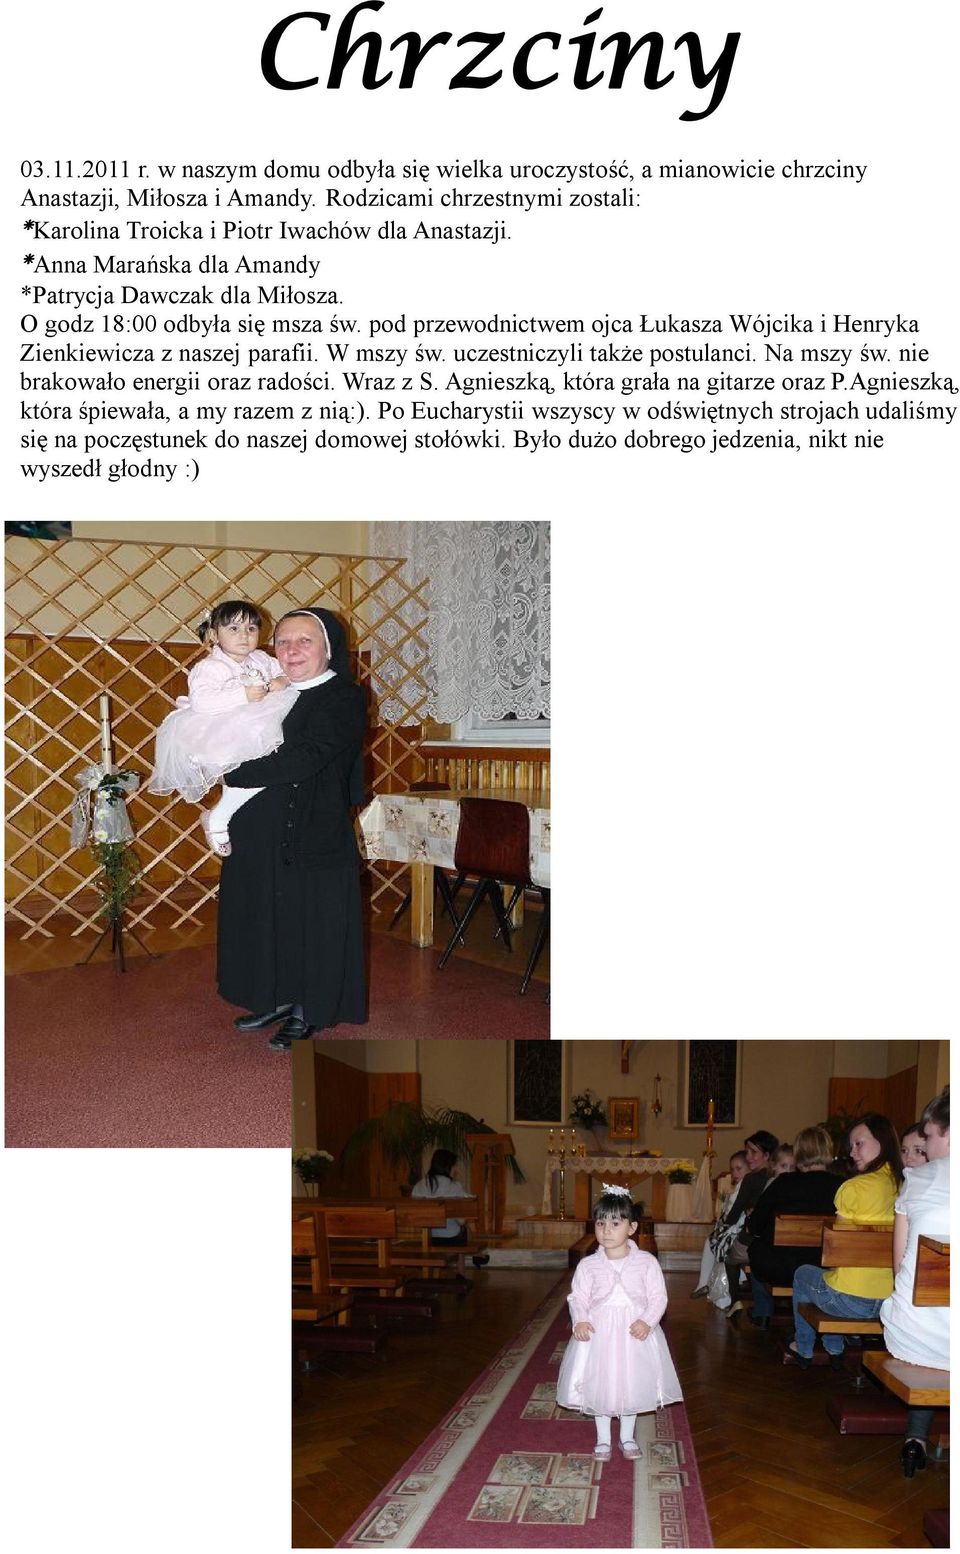 pod przewodnictwem ojca Łukasza Wójcika i Henryka Zienkiewicza z naszej parafii. W mszy św. uczestniczyli także postulanci. Na mszy św. nie brakowało energii oraz radości.